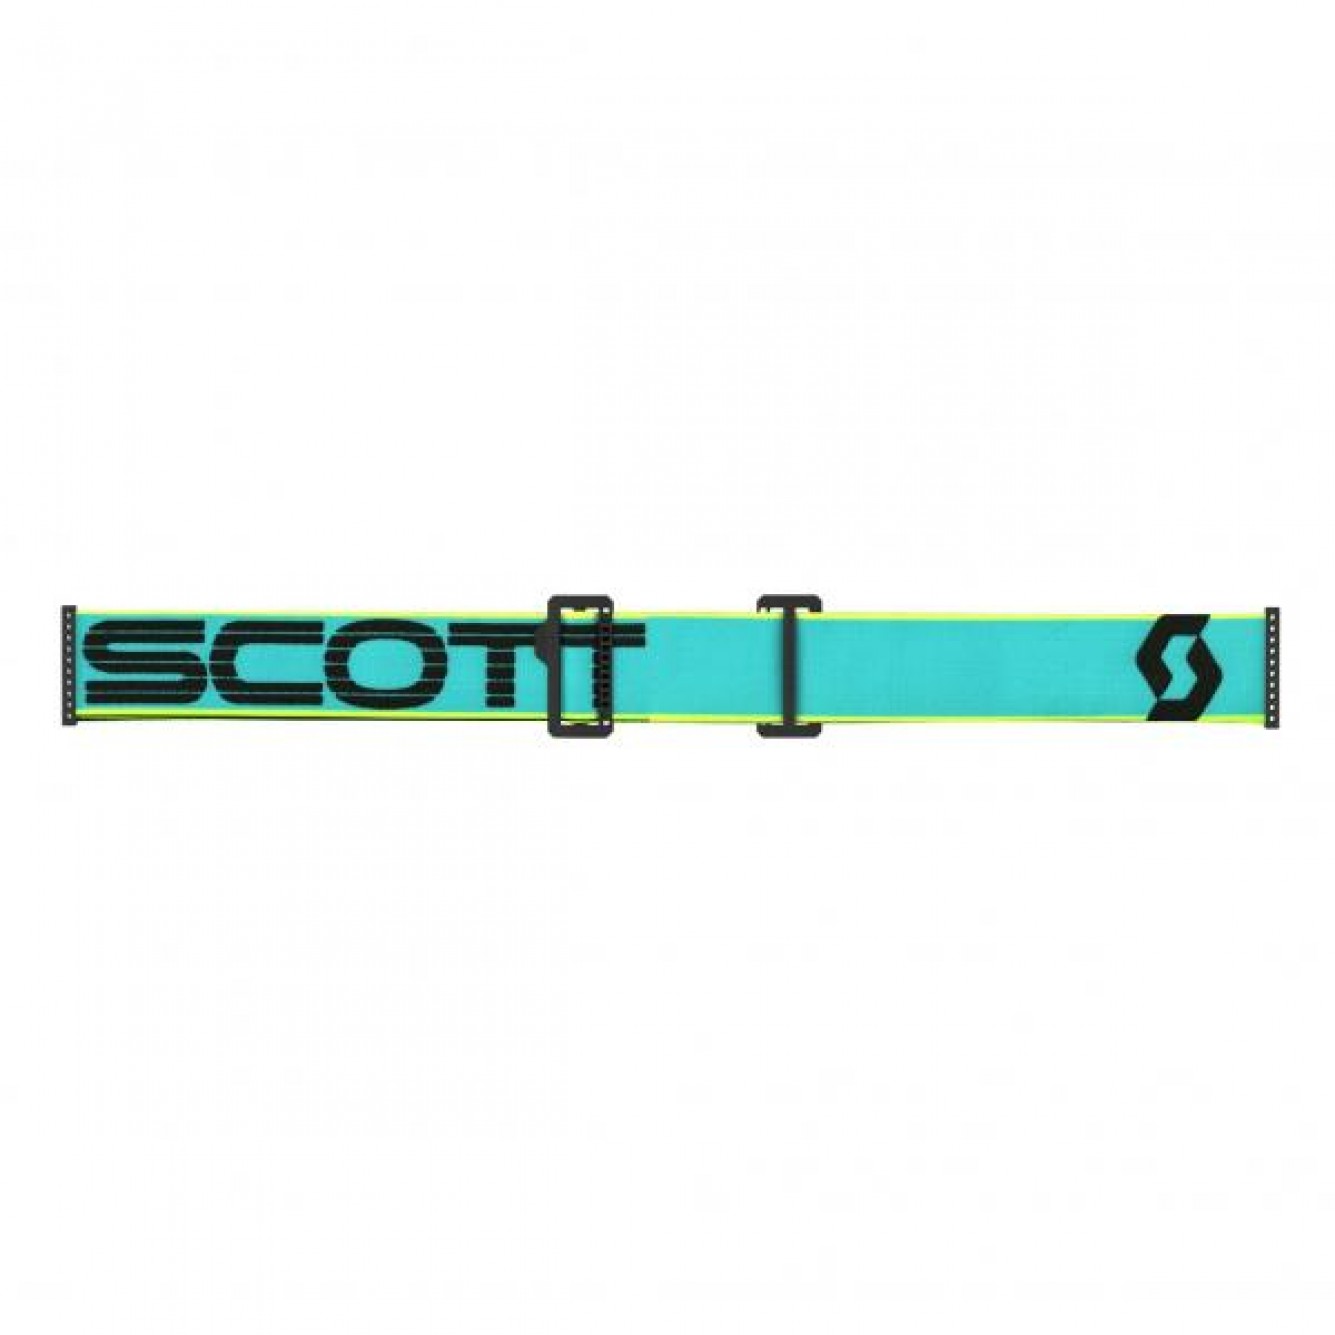 Scott | Crossbril Prospect Roll-Off Blauw / Teal 